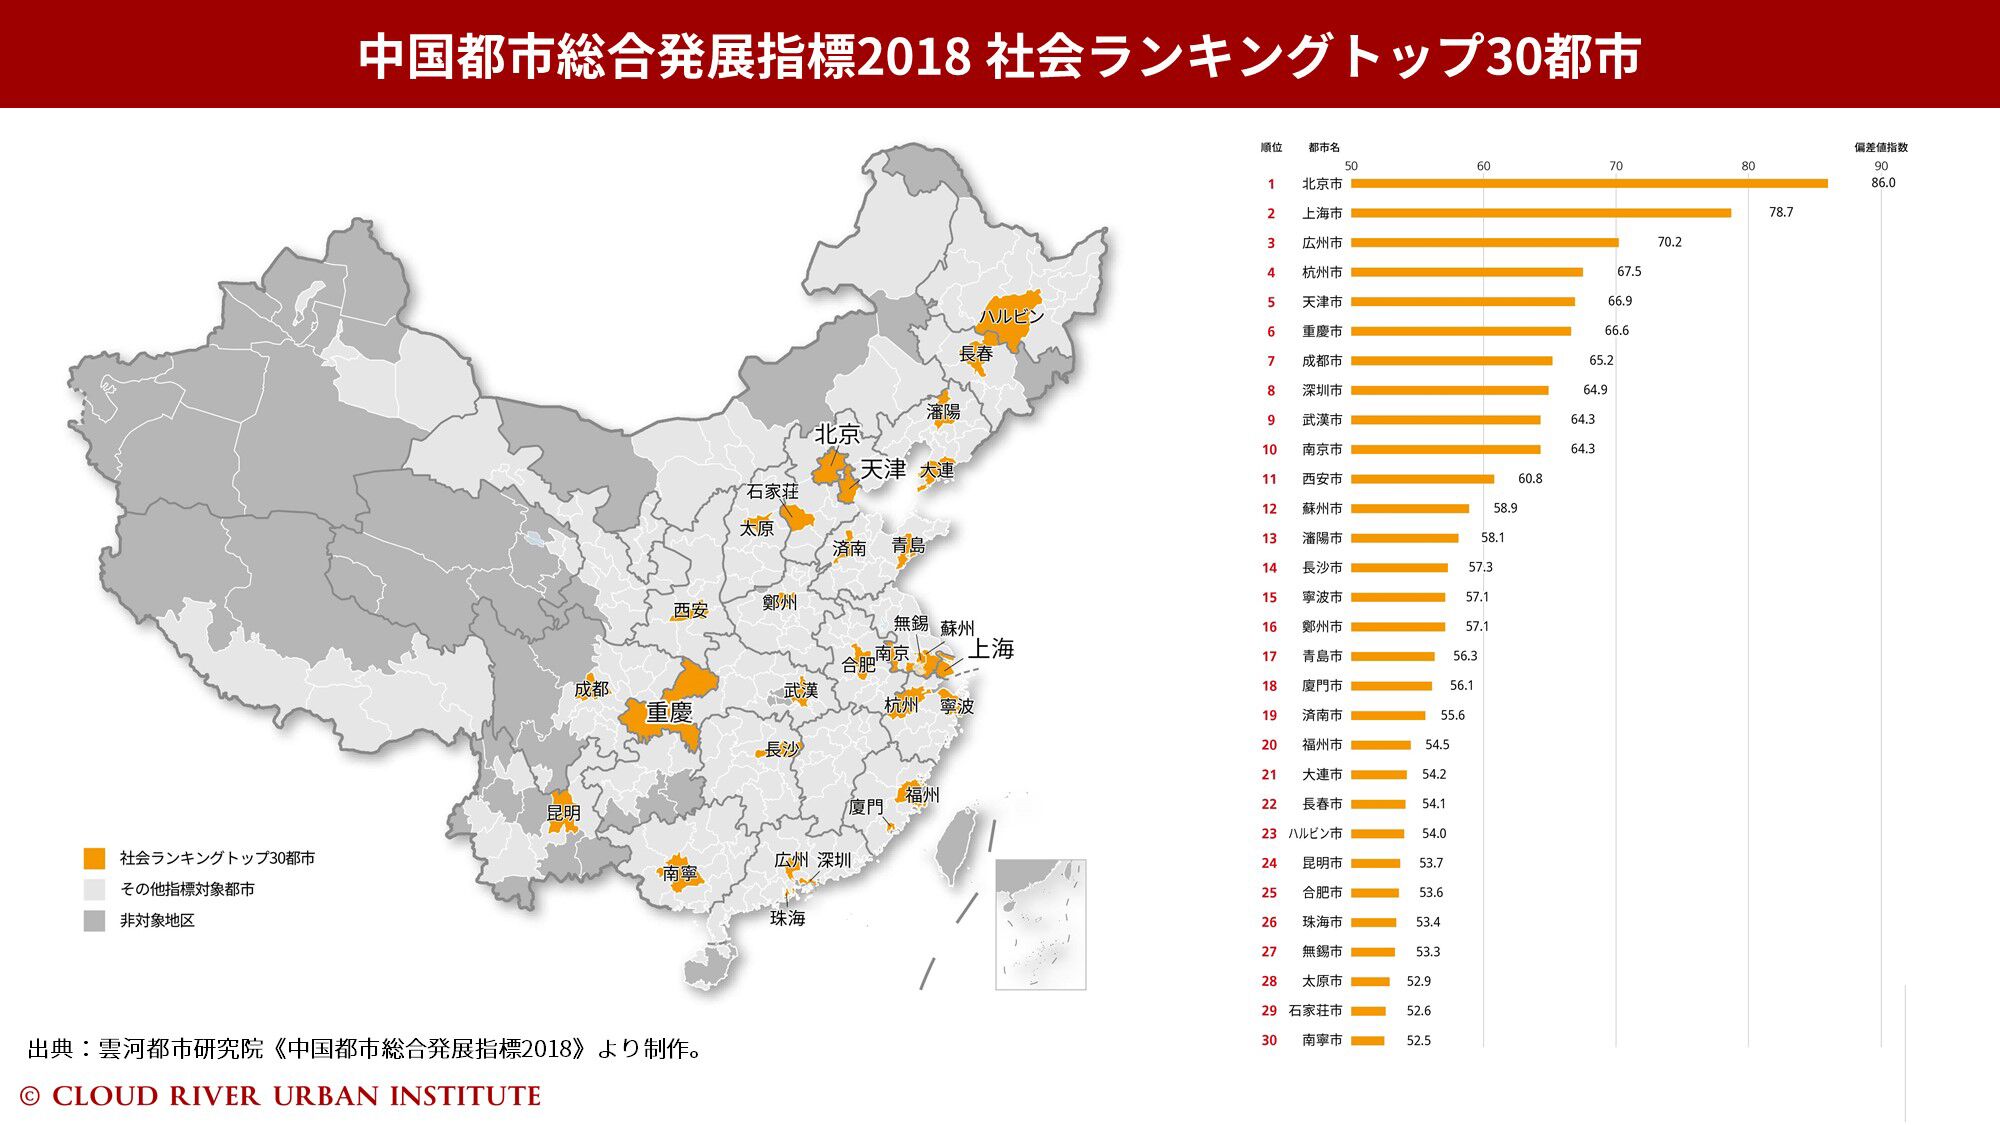 中国都市総合発展指標2018社会ランキング 